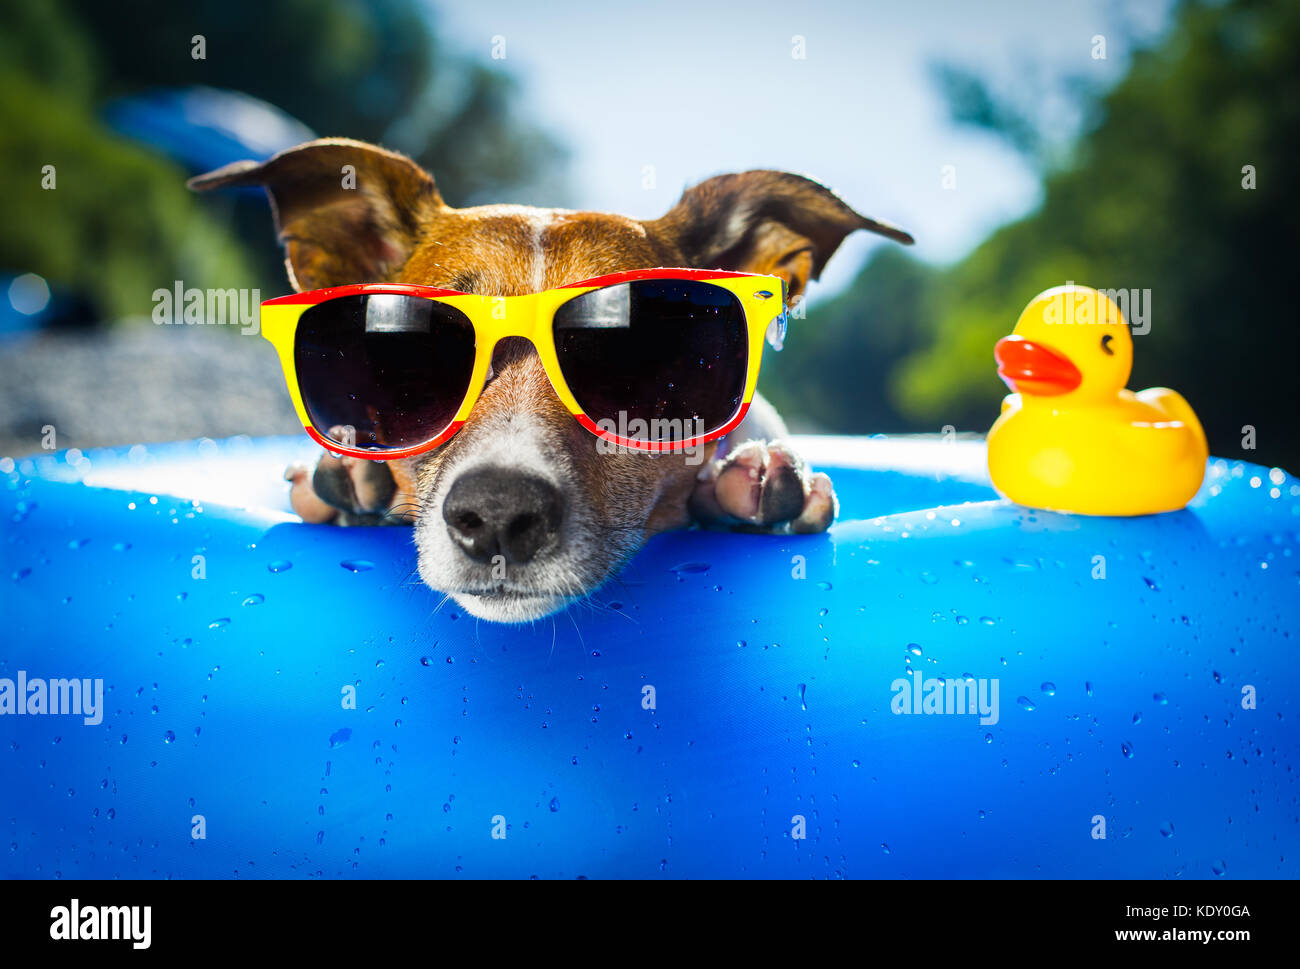 Hund auf blaue Luftmatratze im Wasser erfrischend Stockfotografie - Alamy